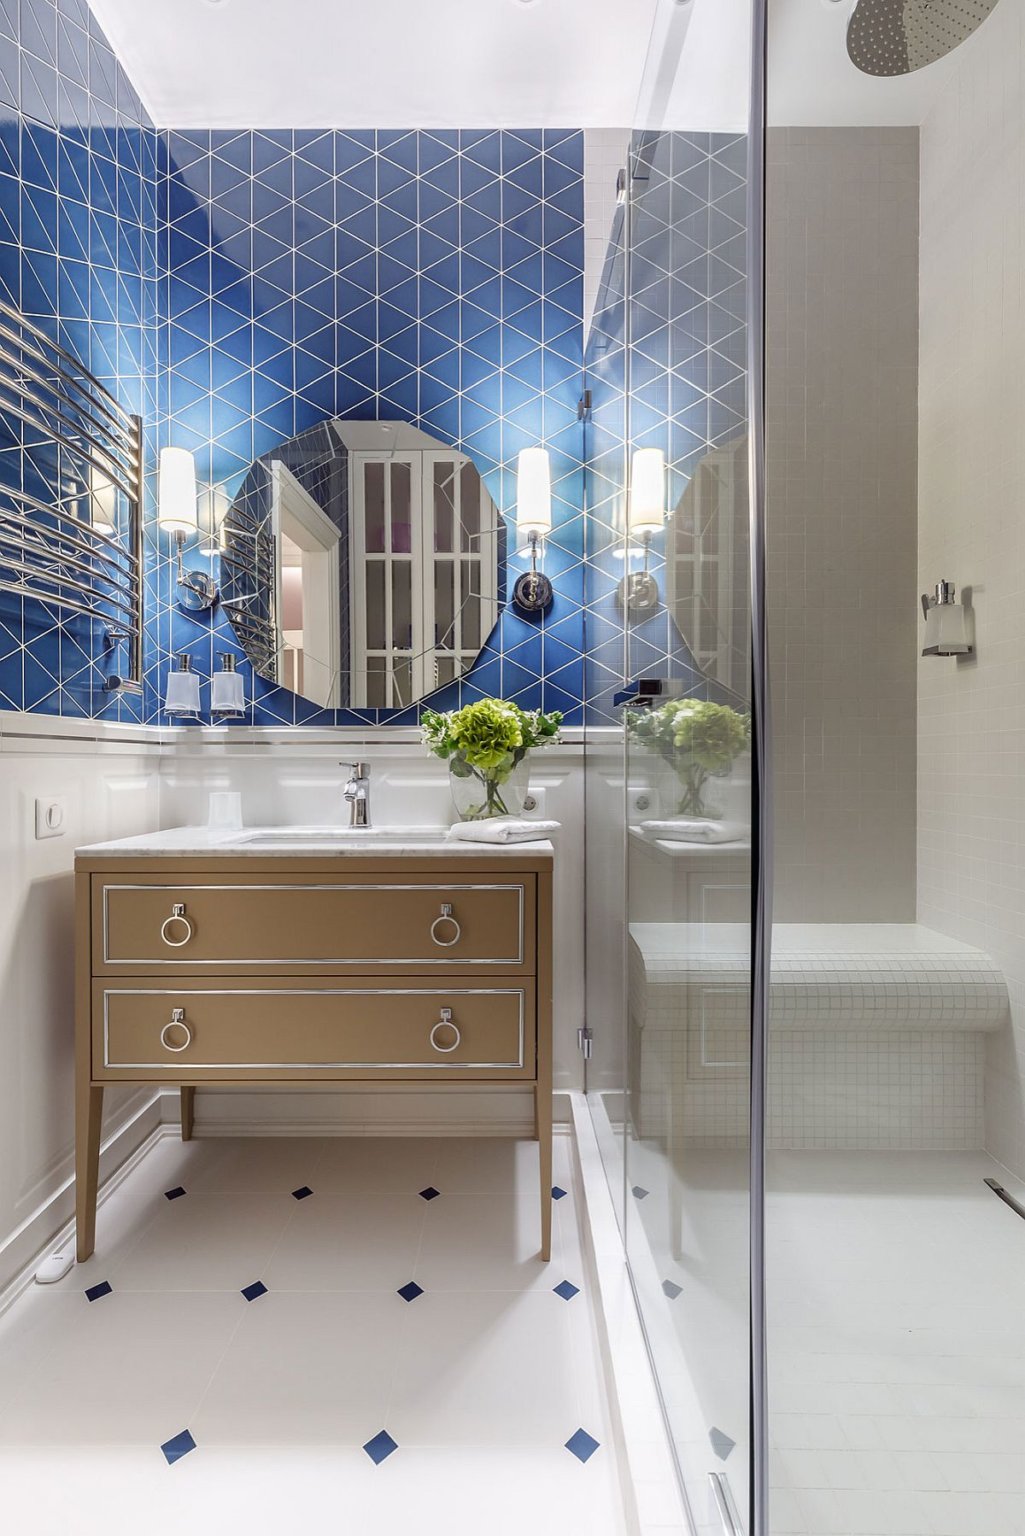 hình ảnh phòng tắm nhỏ nổi bật với gạch ốp màu xanh